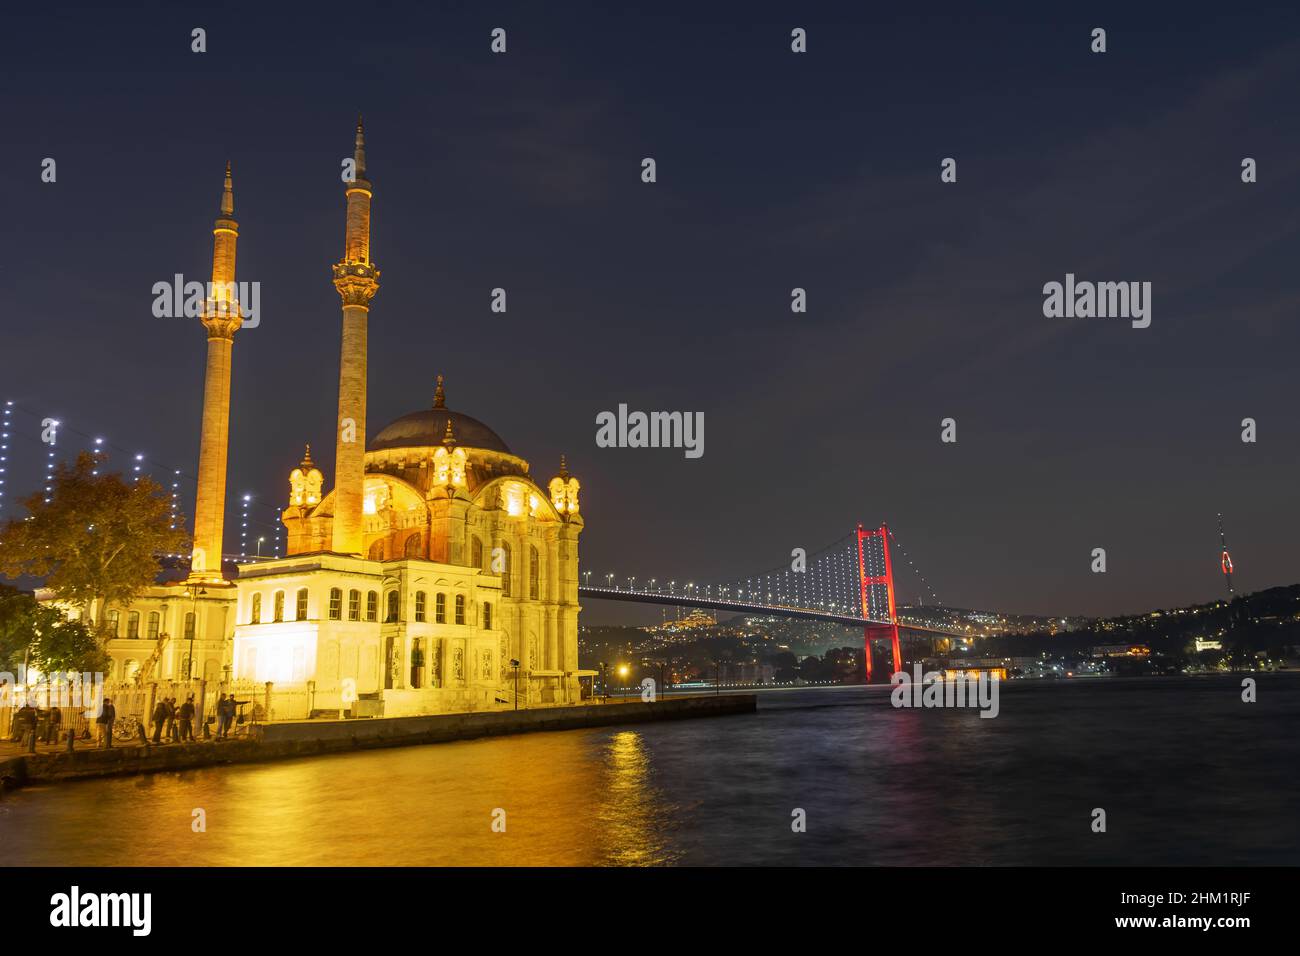 Ortakoy Moschee, Bosporus und Istanbul Brücke bei Nacht in Istanbul, Türkei - Oktober, 2021: Ortakoy Moschee ist die beliebteste Architektur. Stockfoto